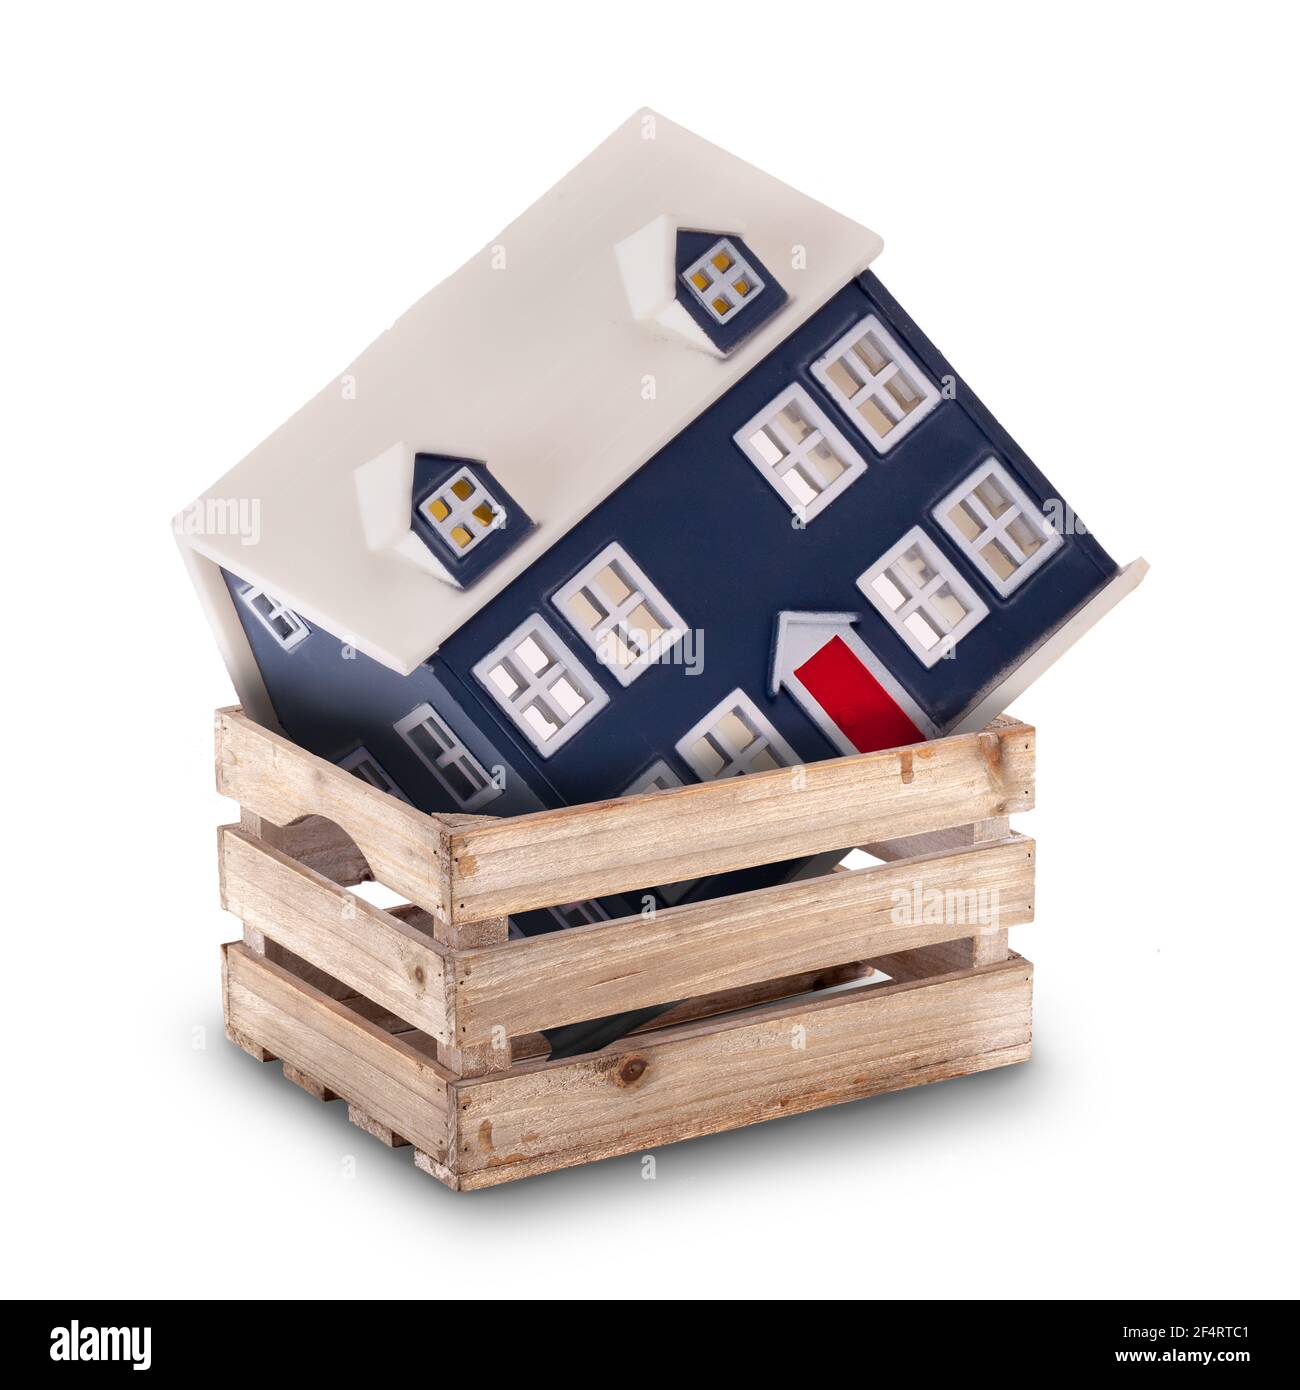 Maison mobile ou concept de stockage avec un peu de maison dedans une caisse ou une boîte isolée sur un fond blanc Banque D'Images